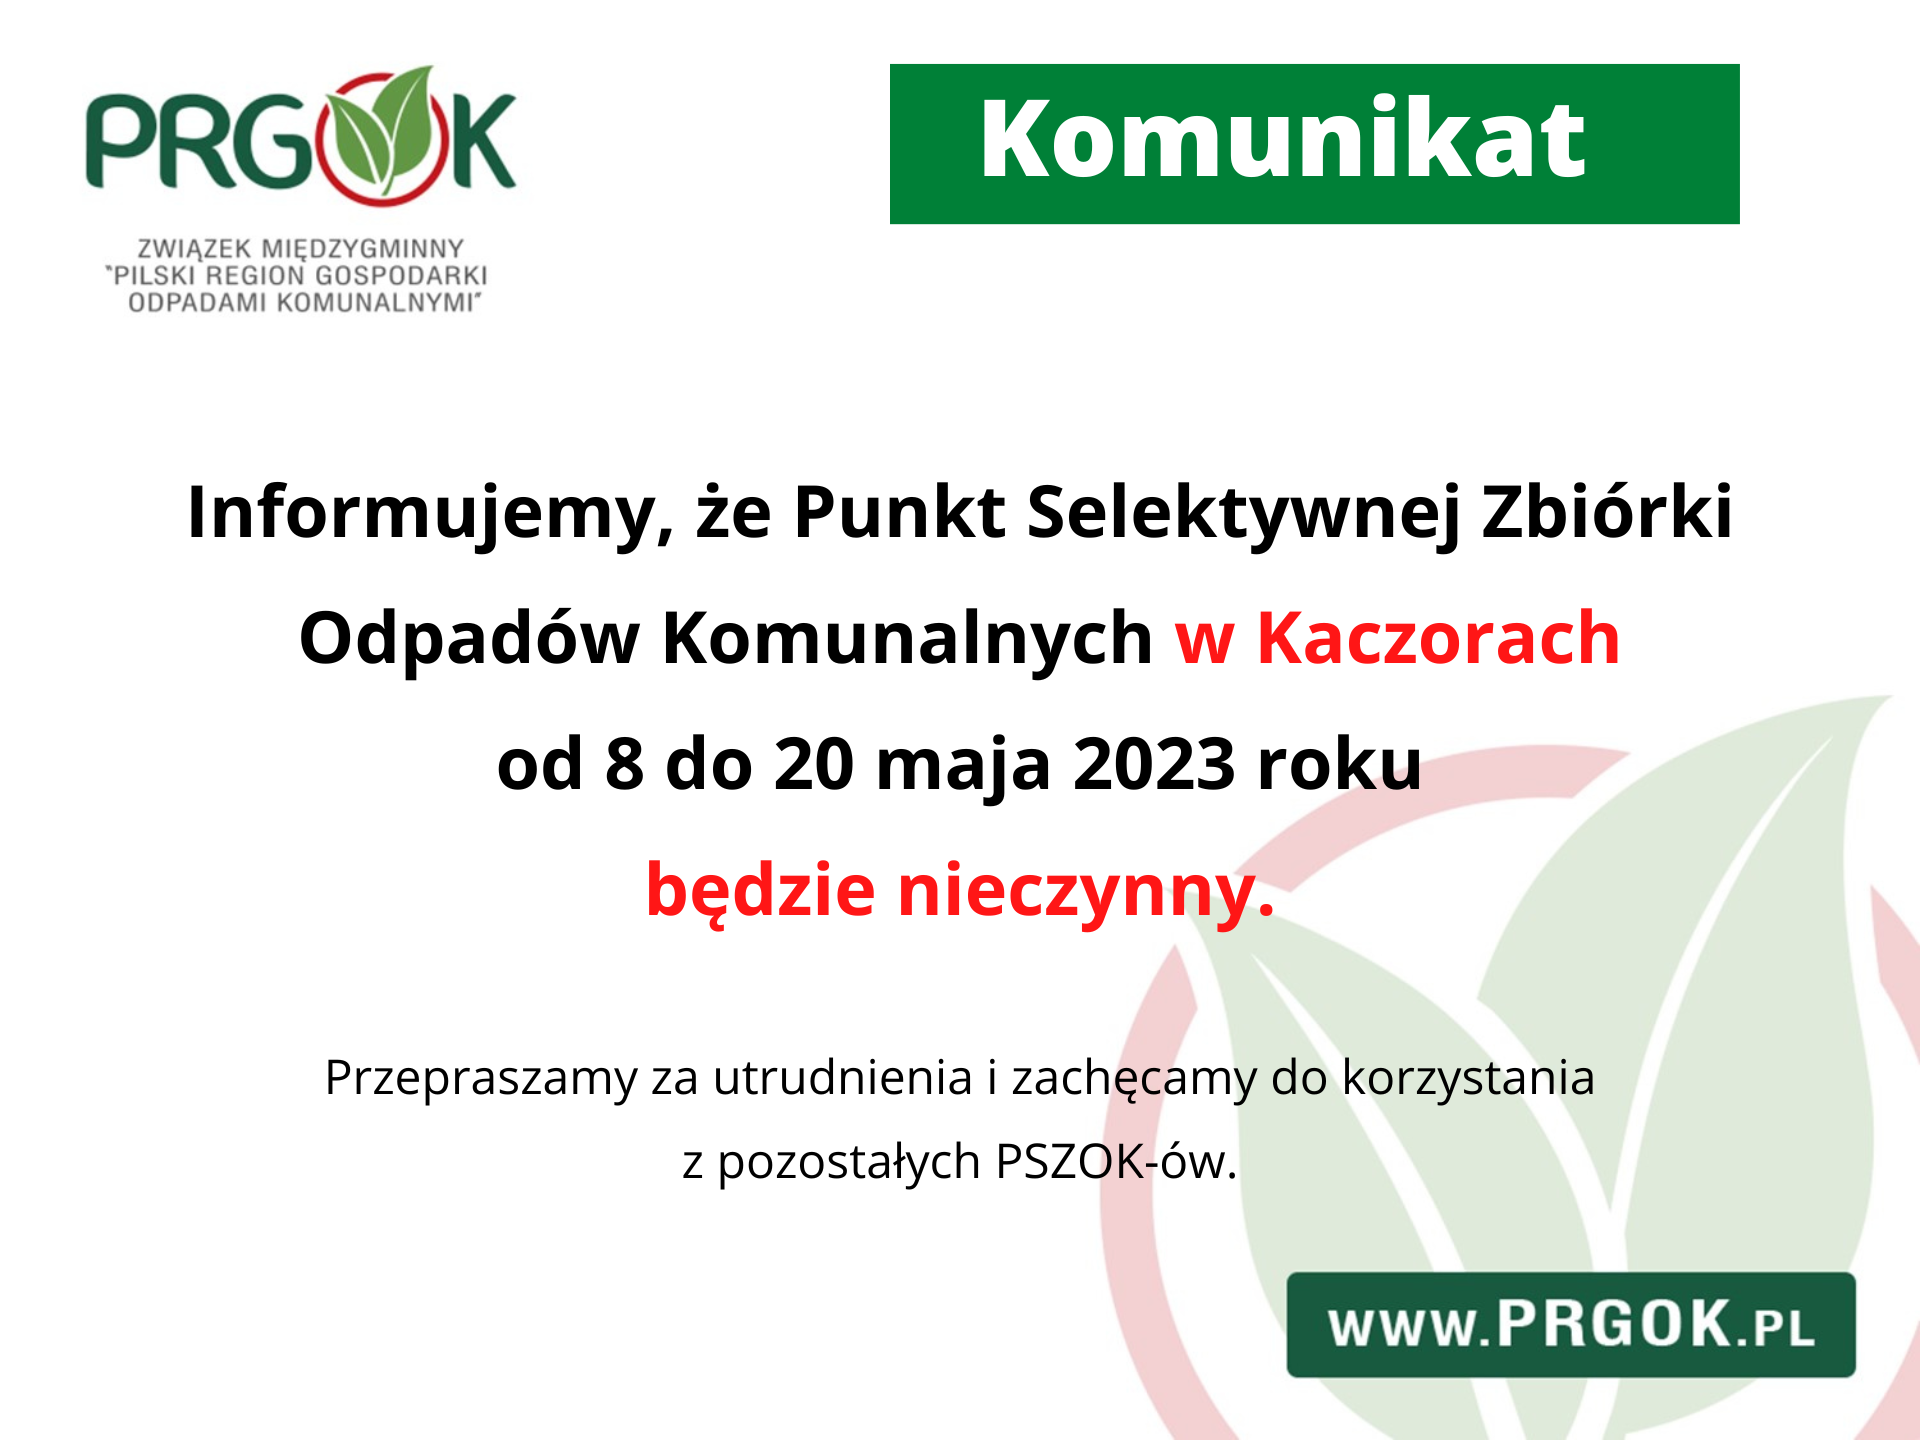 Informujemy, że Punkt Selektywnej Zbiórki Opdadów Komunalnych w Kaczorach od 8 do 20 maja 2023 roku będzie nieczynny.